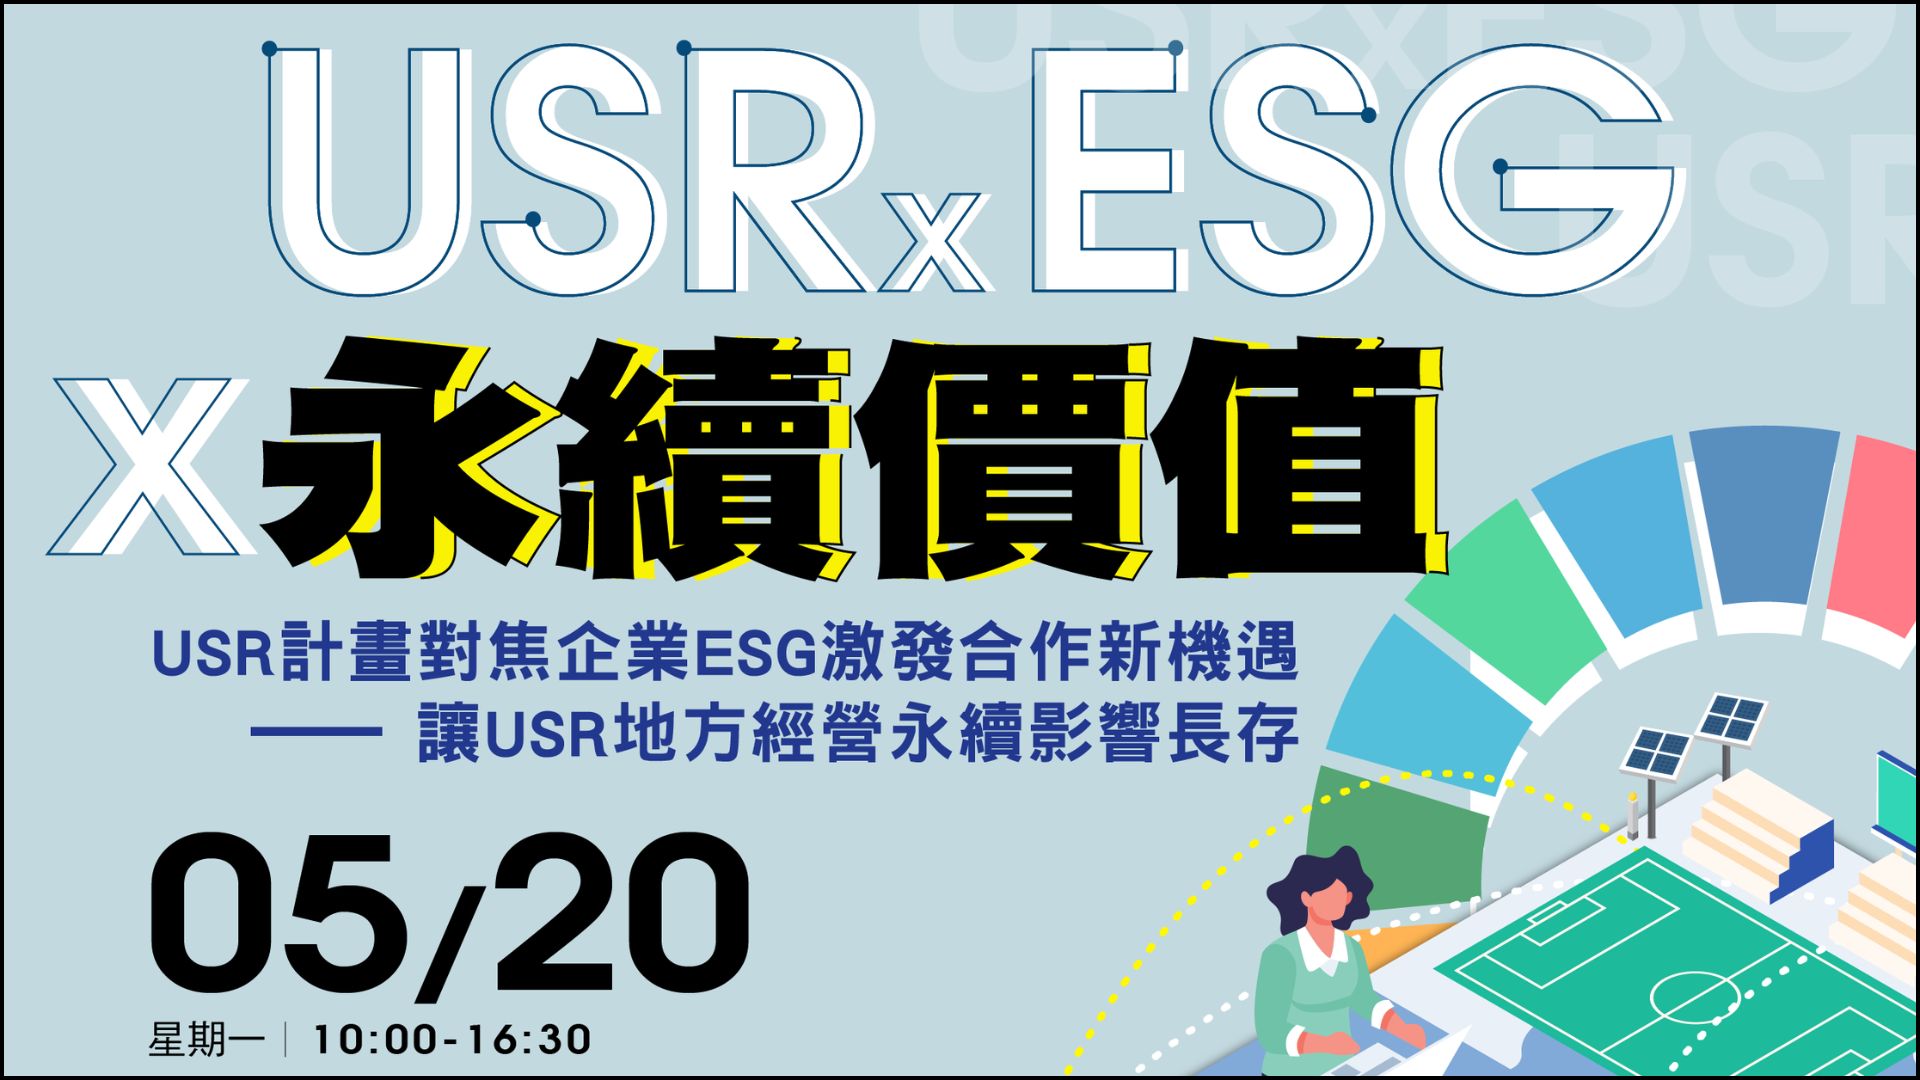 【培力活動】正修科技大學於113/05/20辦理「USR x ESG x永續價值」